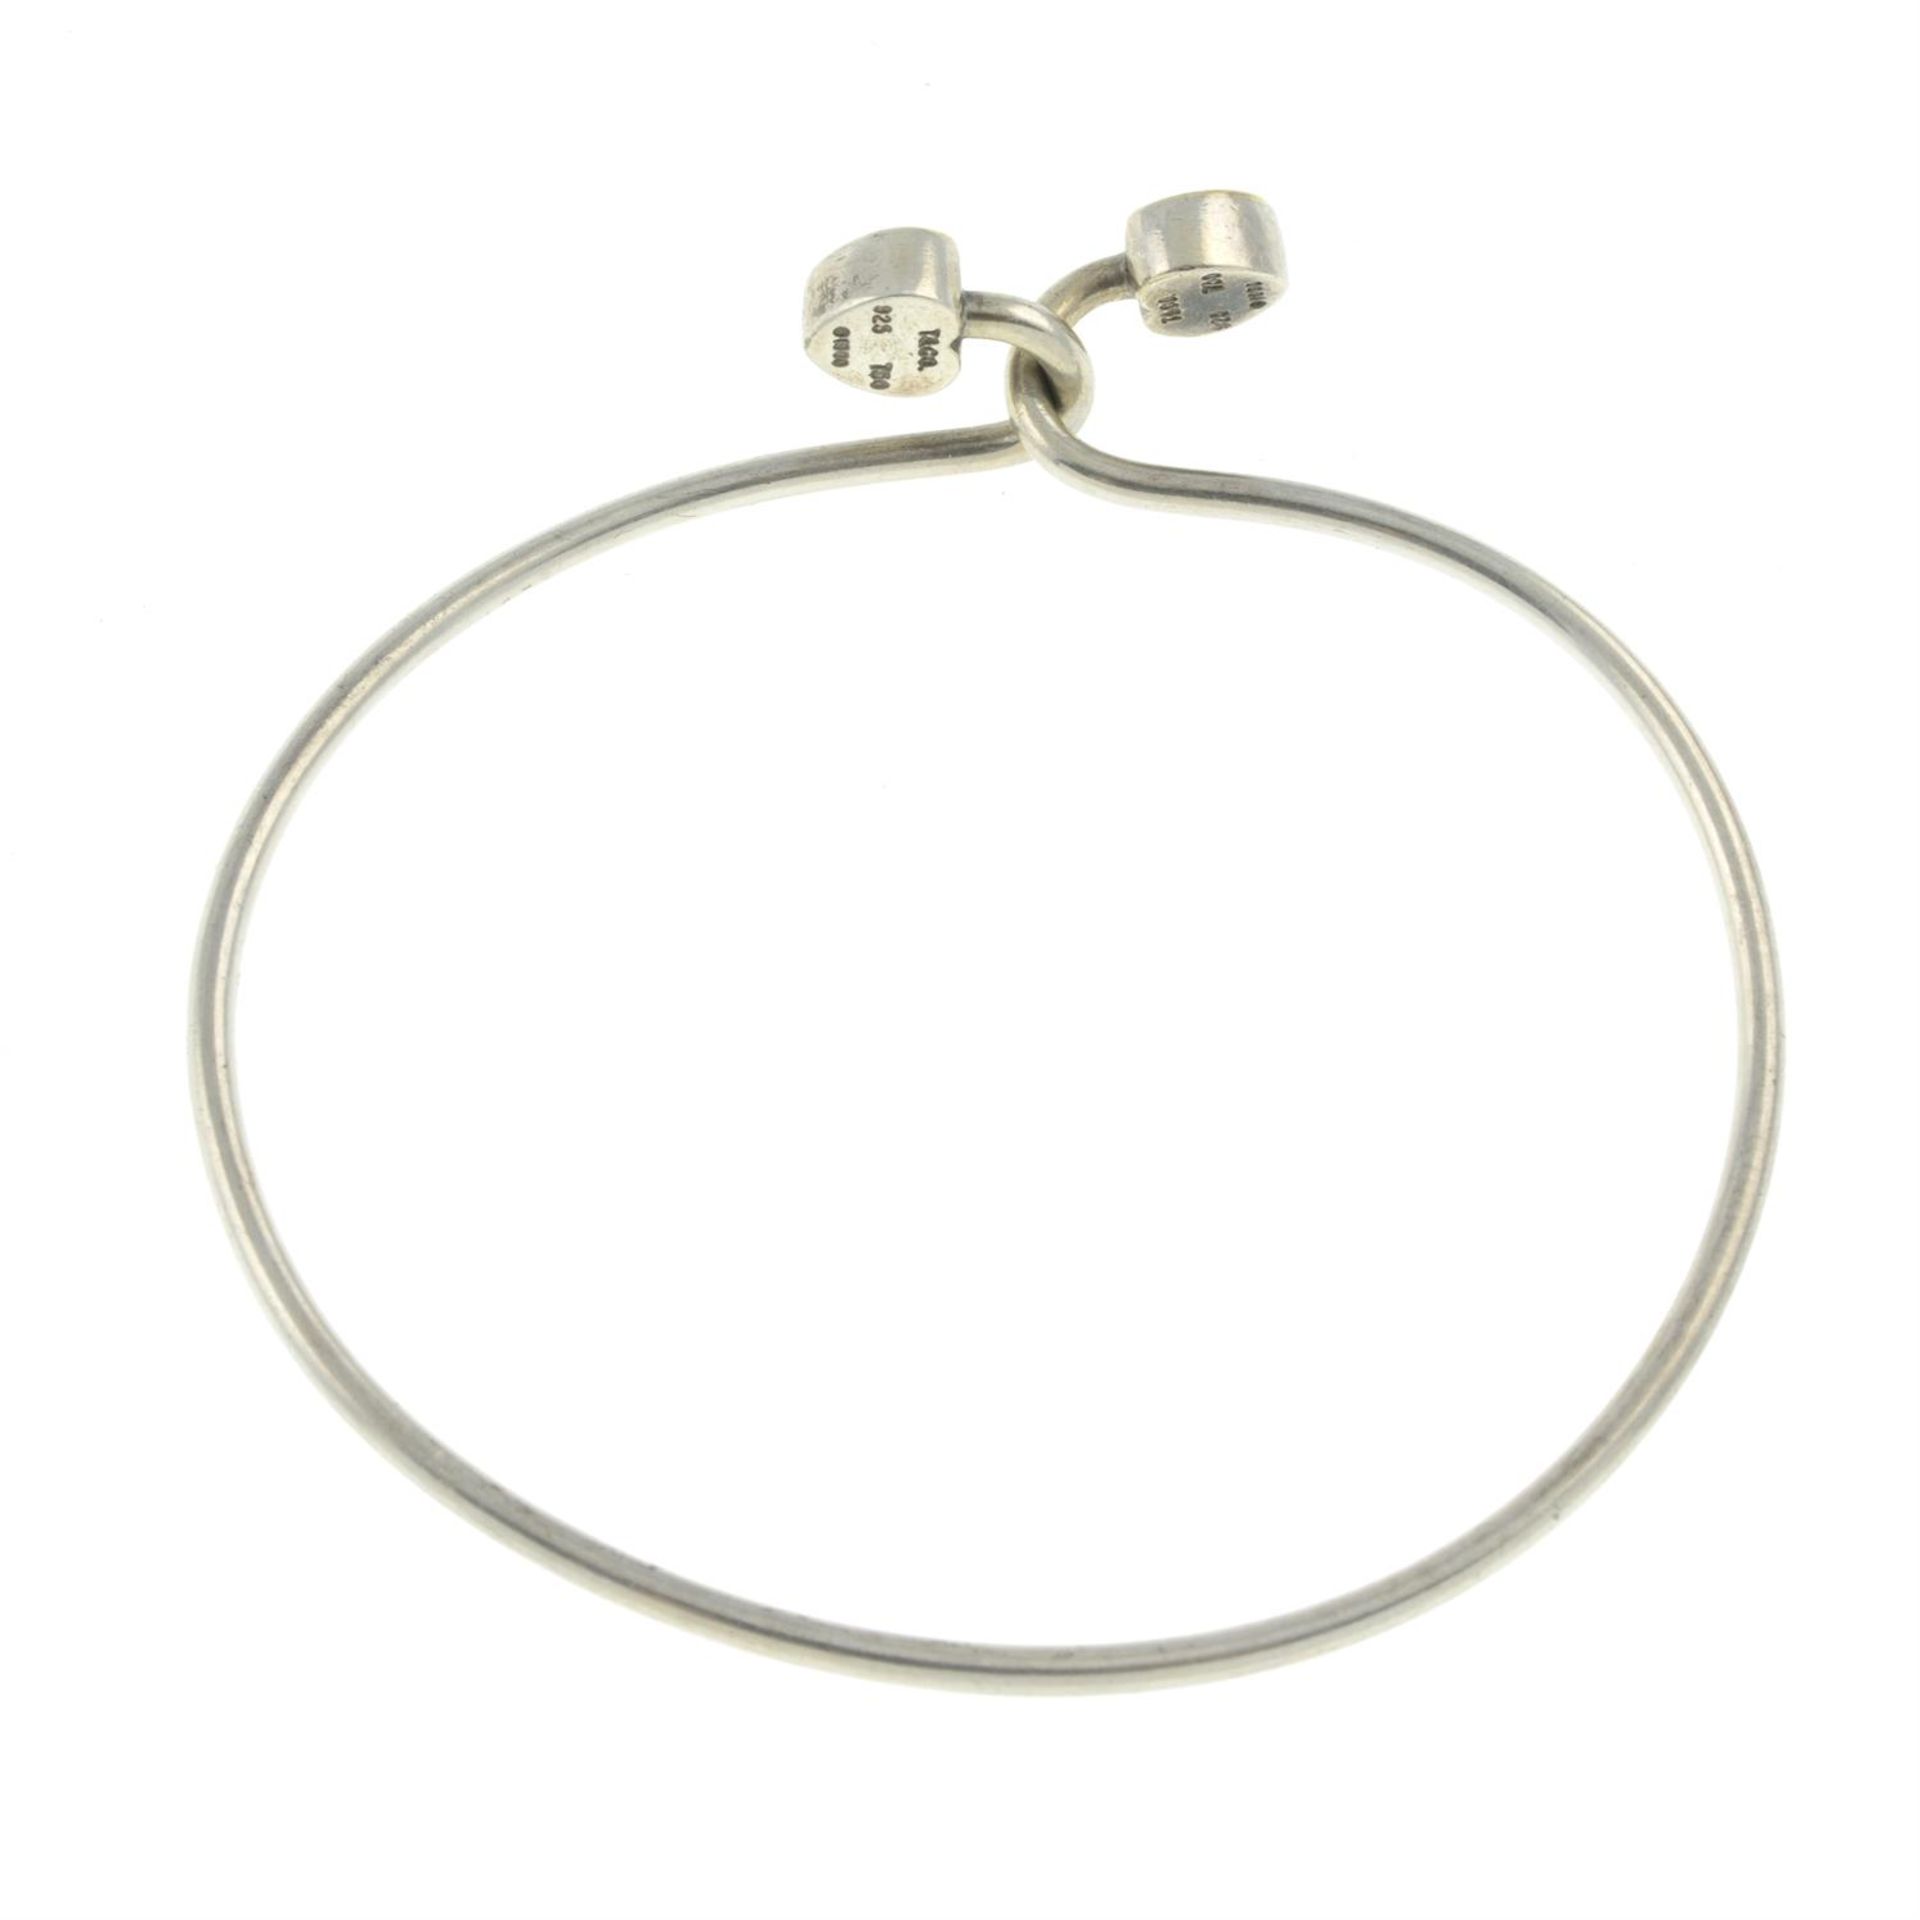 Silver bi-colour cuff bangle, by Tiffany & Co. - Image 2 of 2